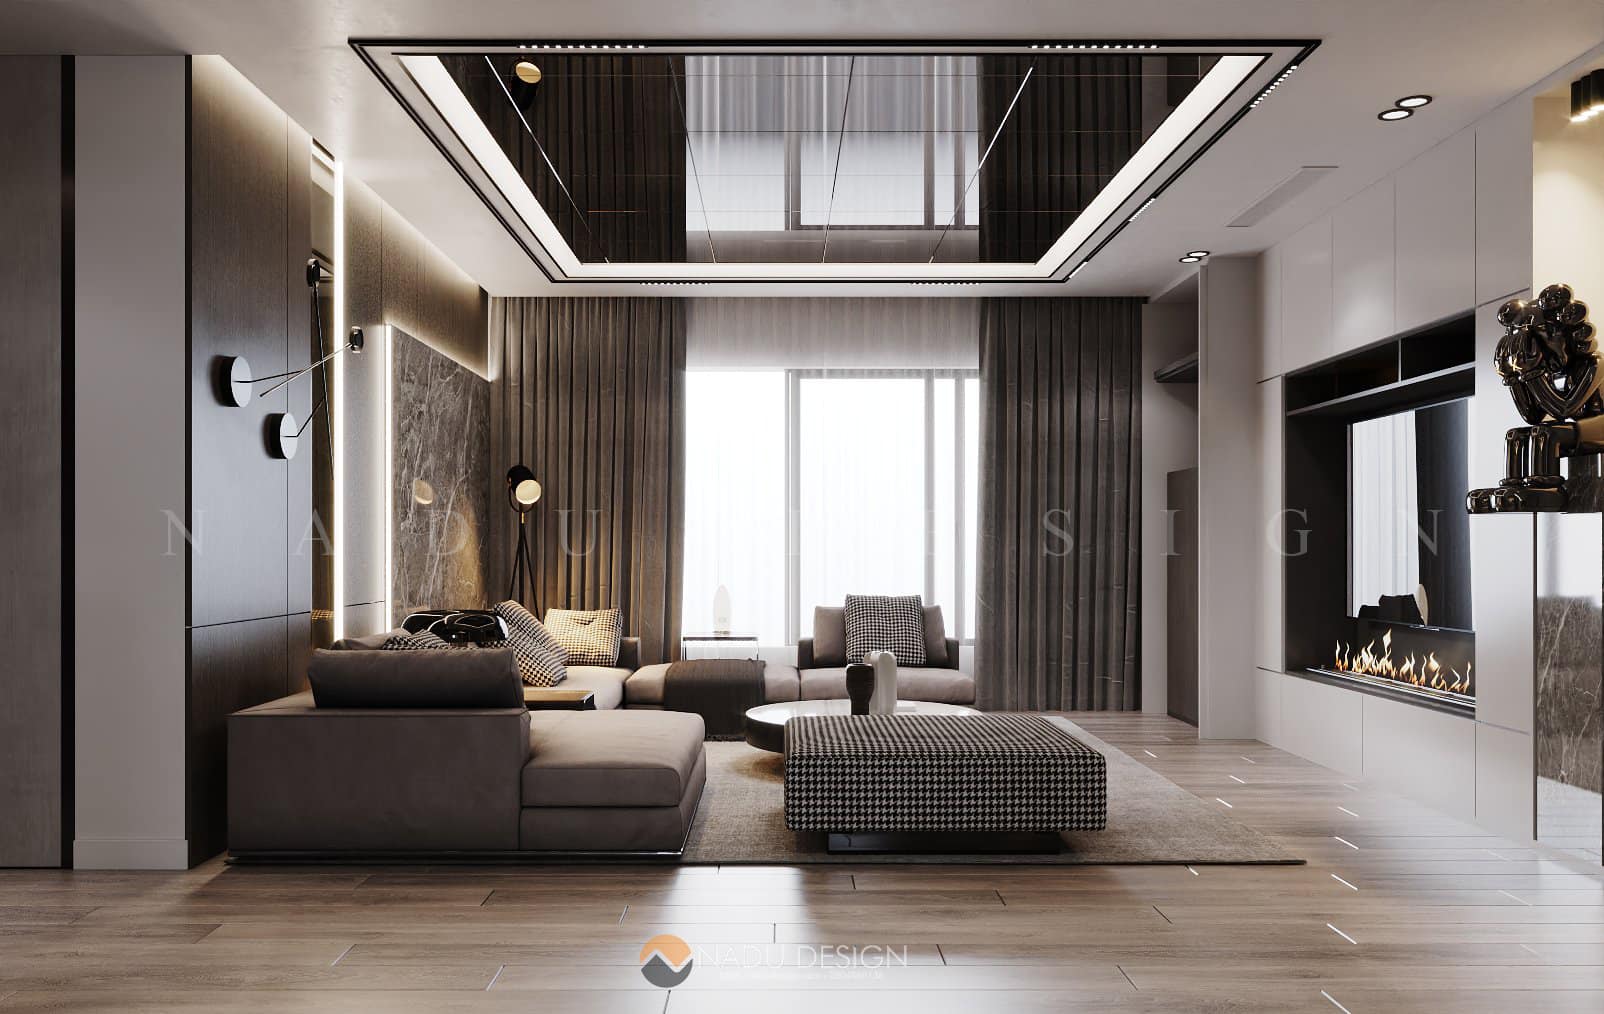 TOP 100 Mẫu thiết kế nội thất chung cư đẹp từ 50m2 đến 110m2 cao cấp giá rẻ